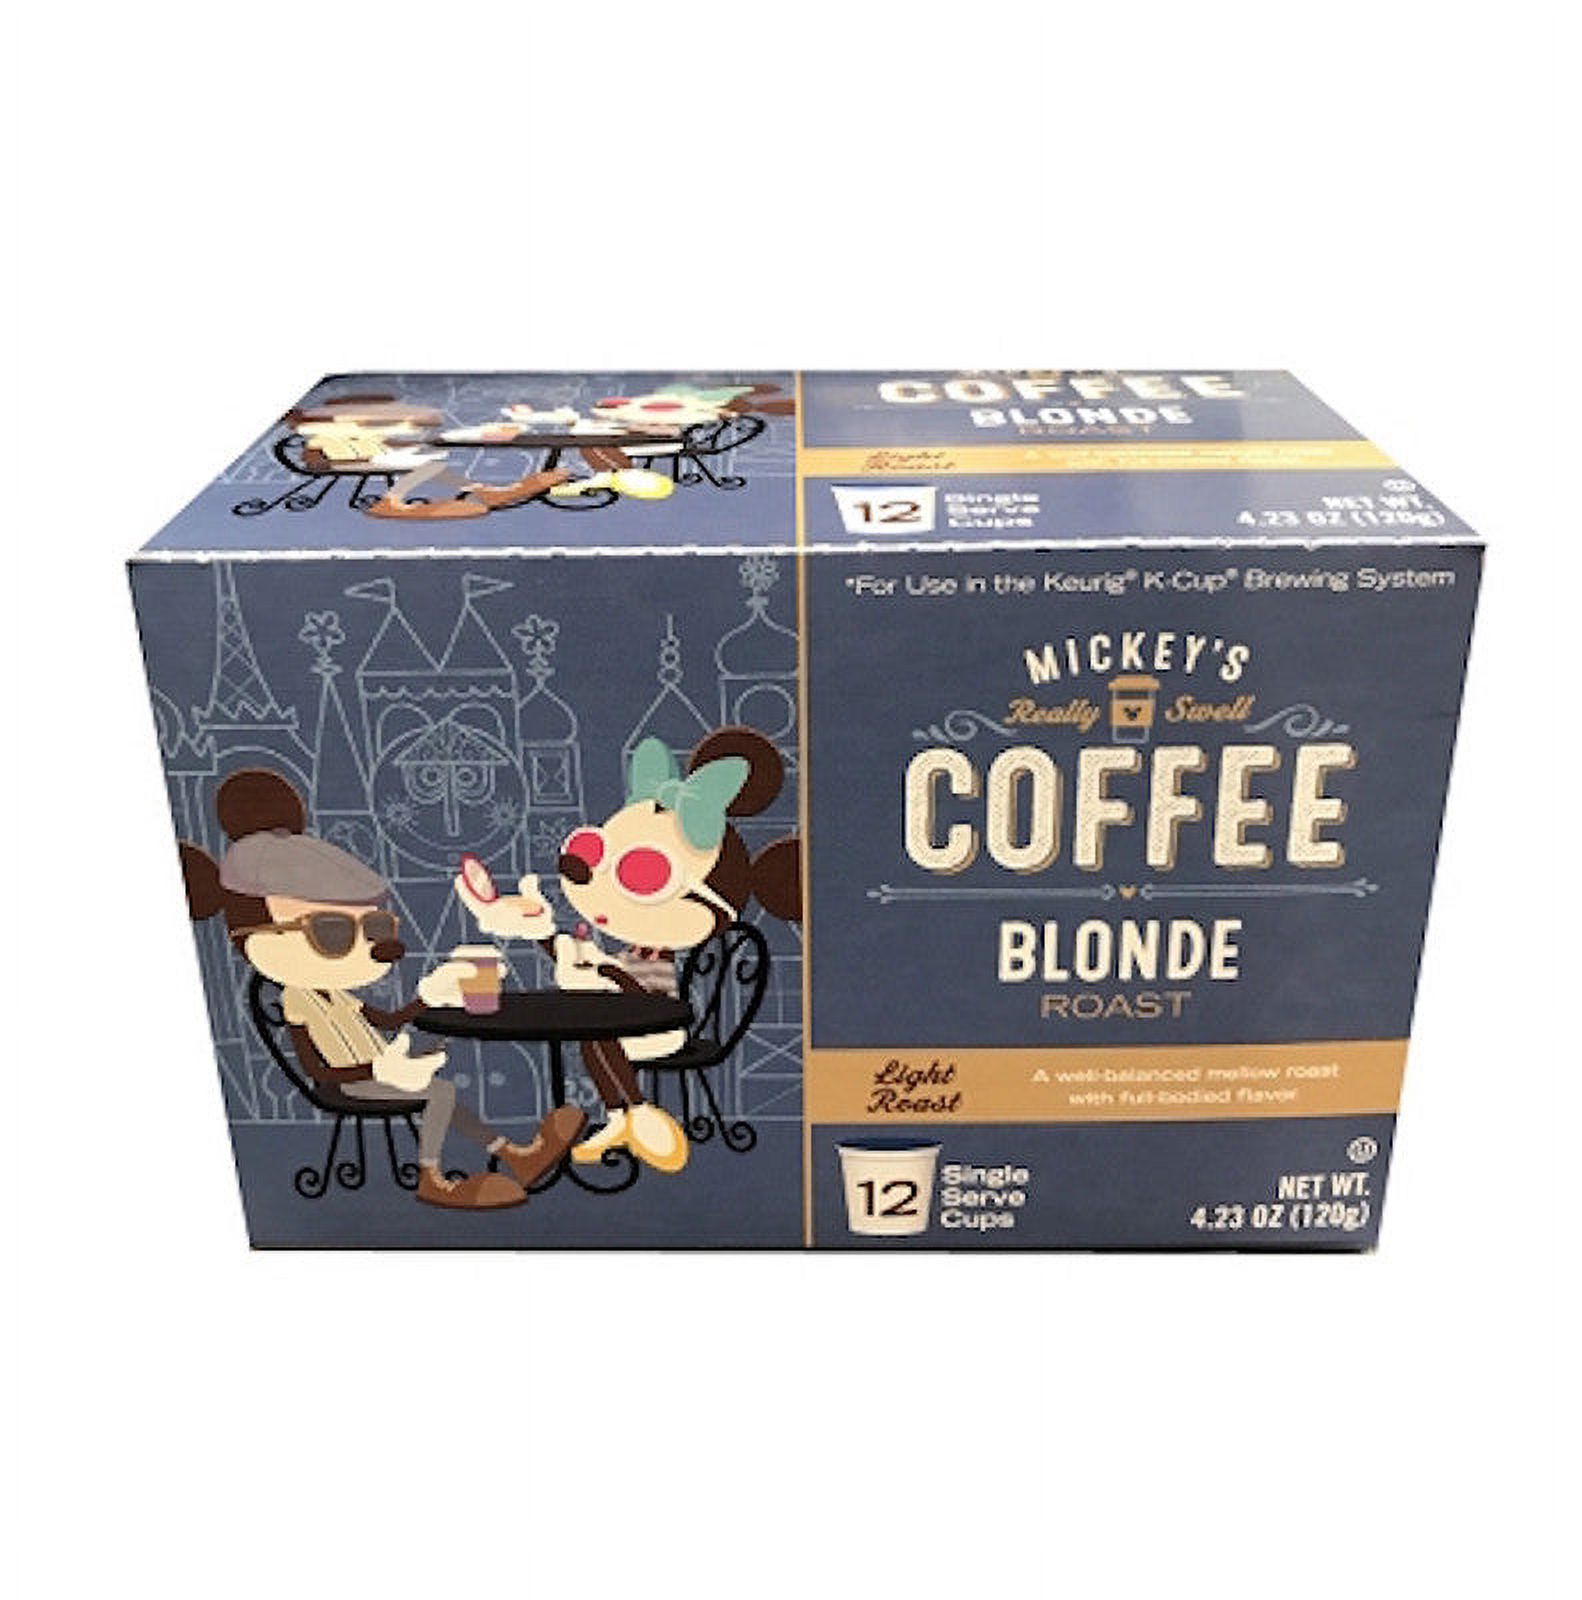 Disney Mickey's Coffee Blonde Roast Light Roast 12 Keurig K-Cup New Sealed - image 1 of 3